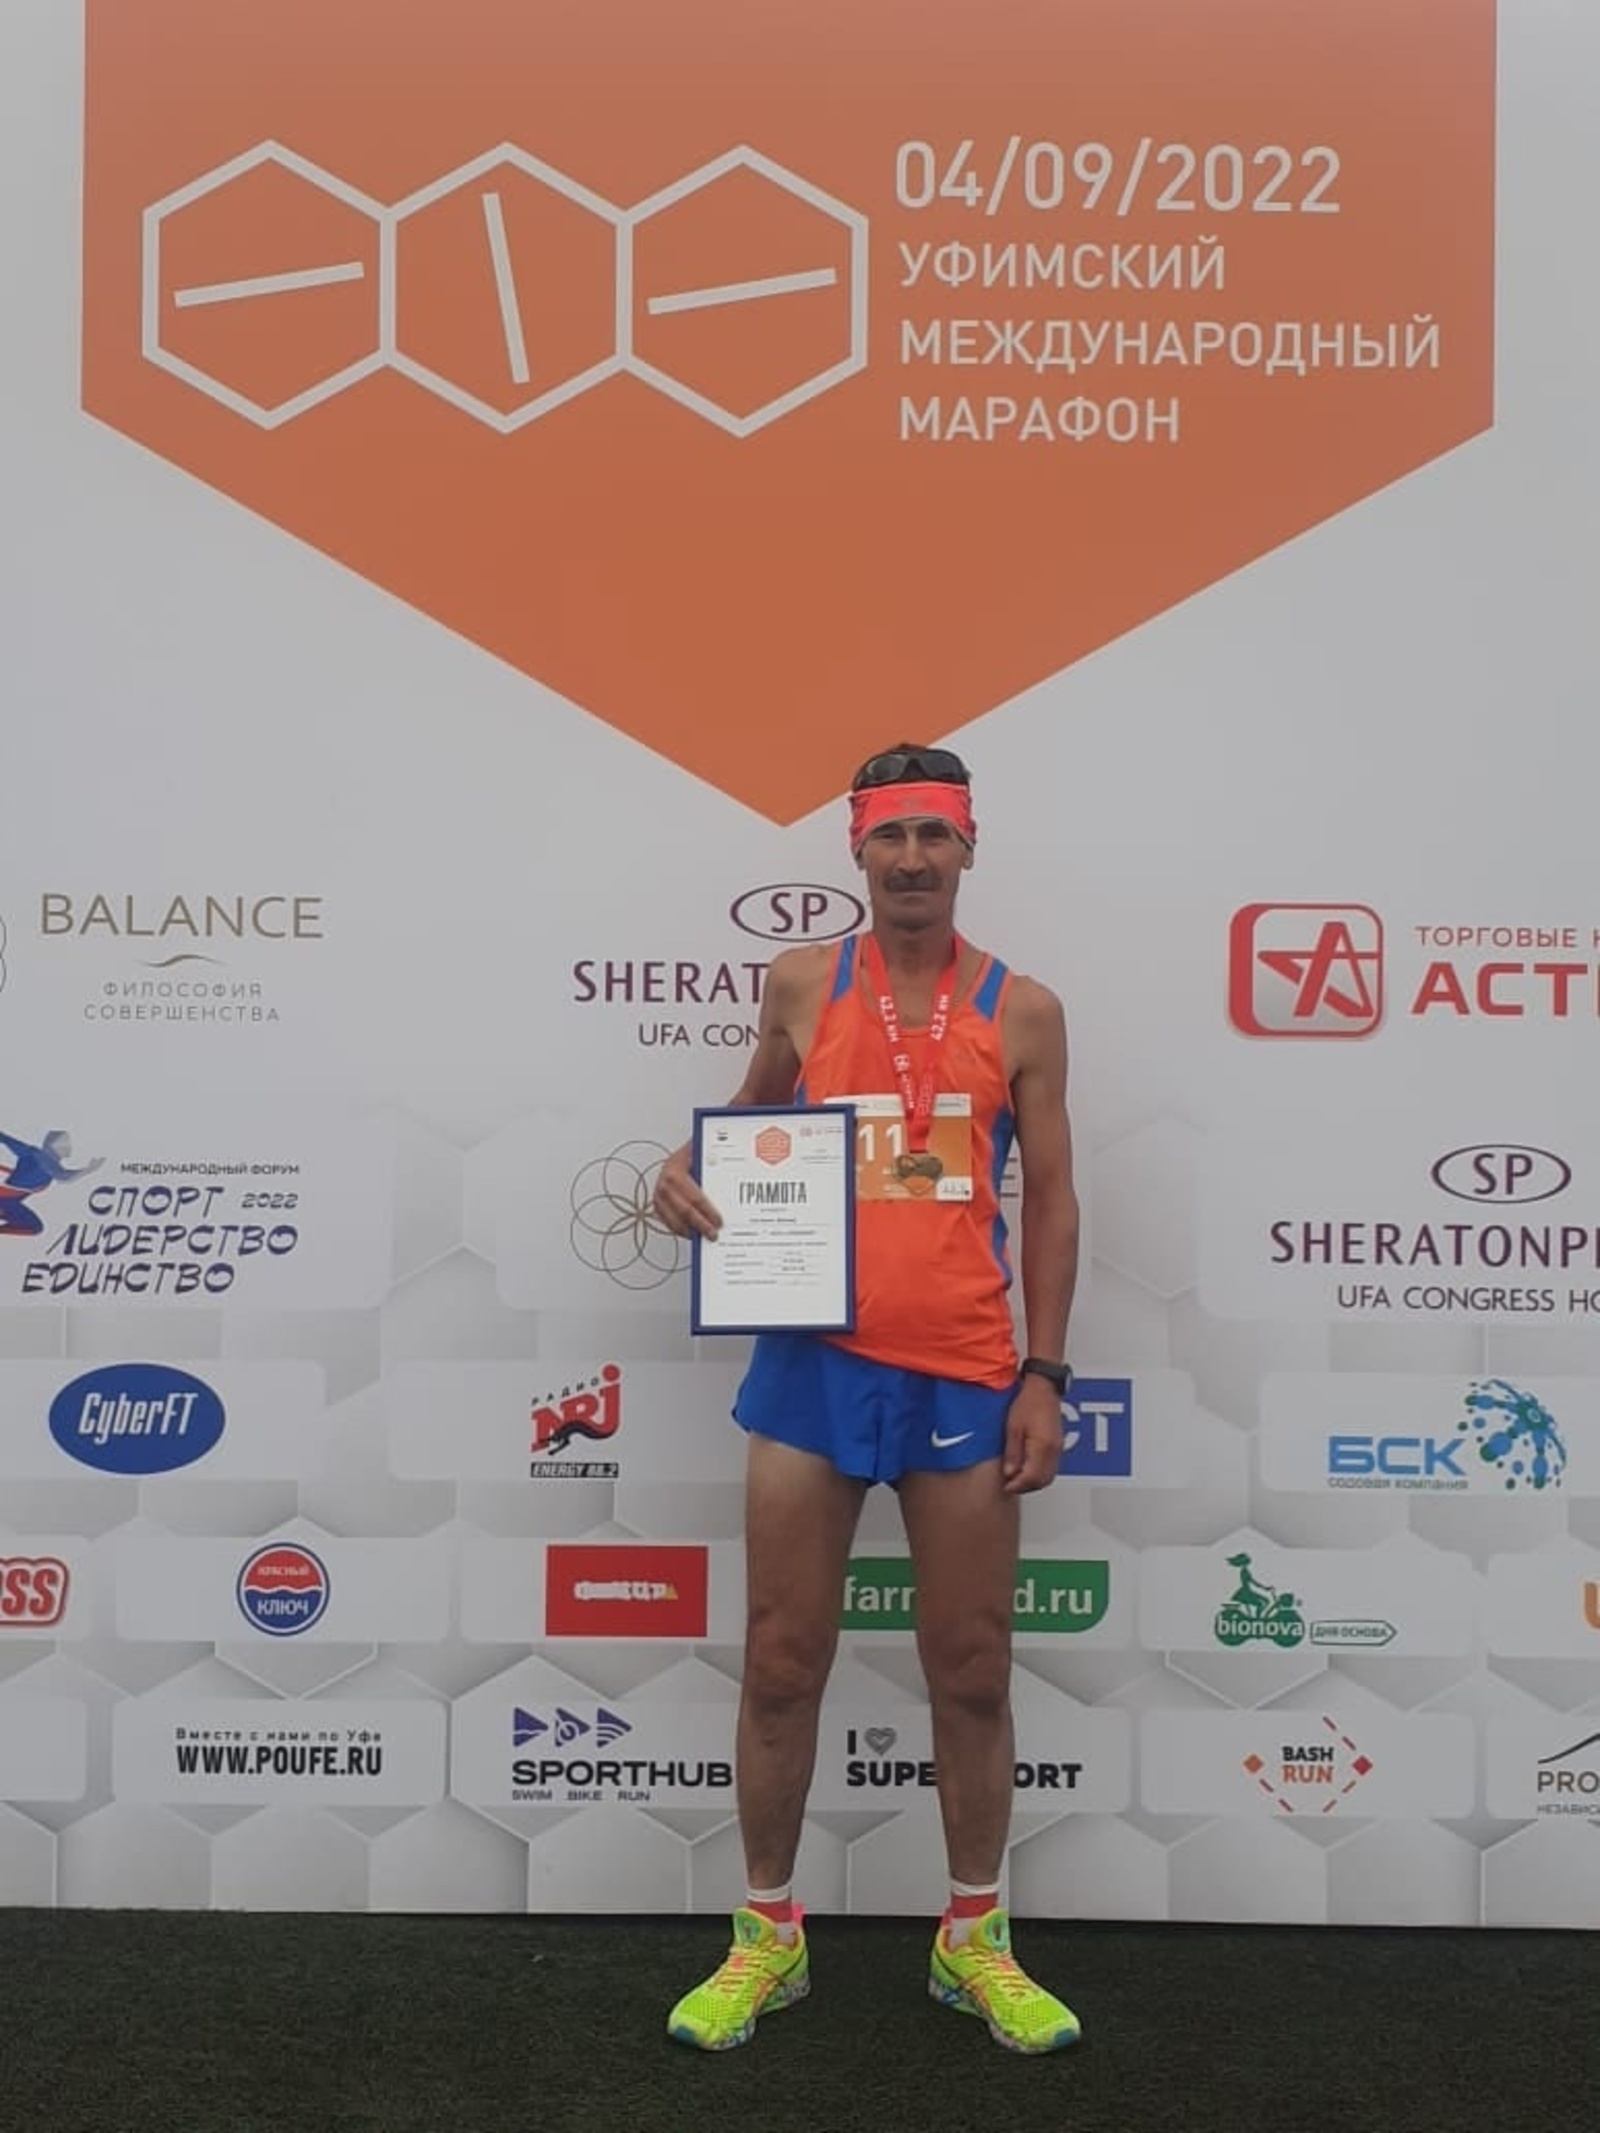 Сибайский спортсмен стал первым на Уфимском международном марафоне